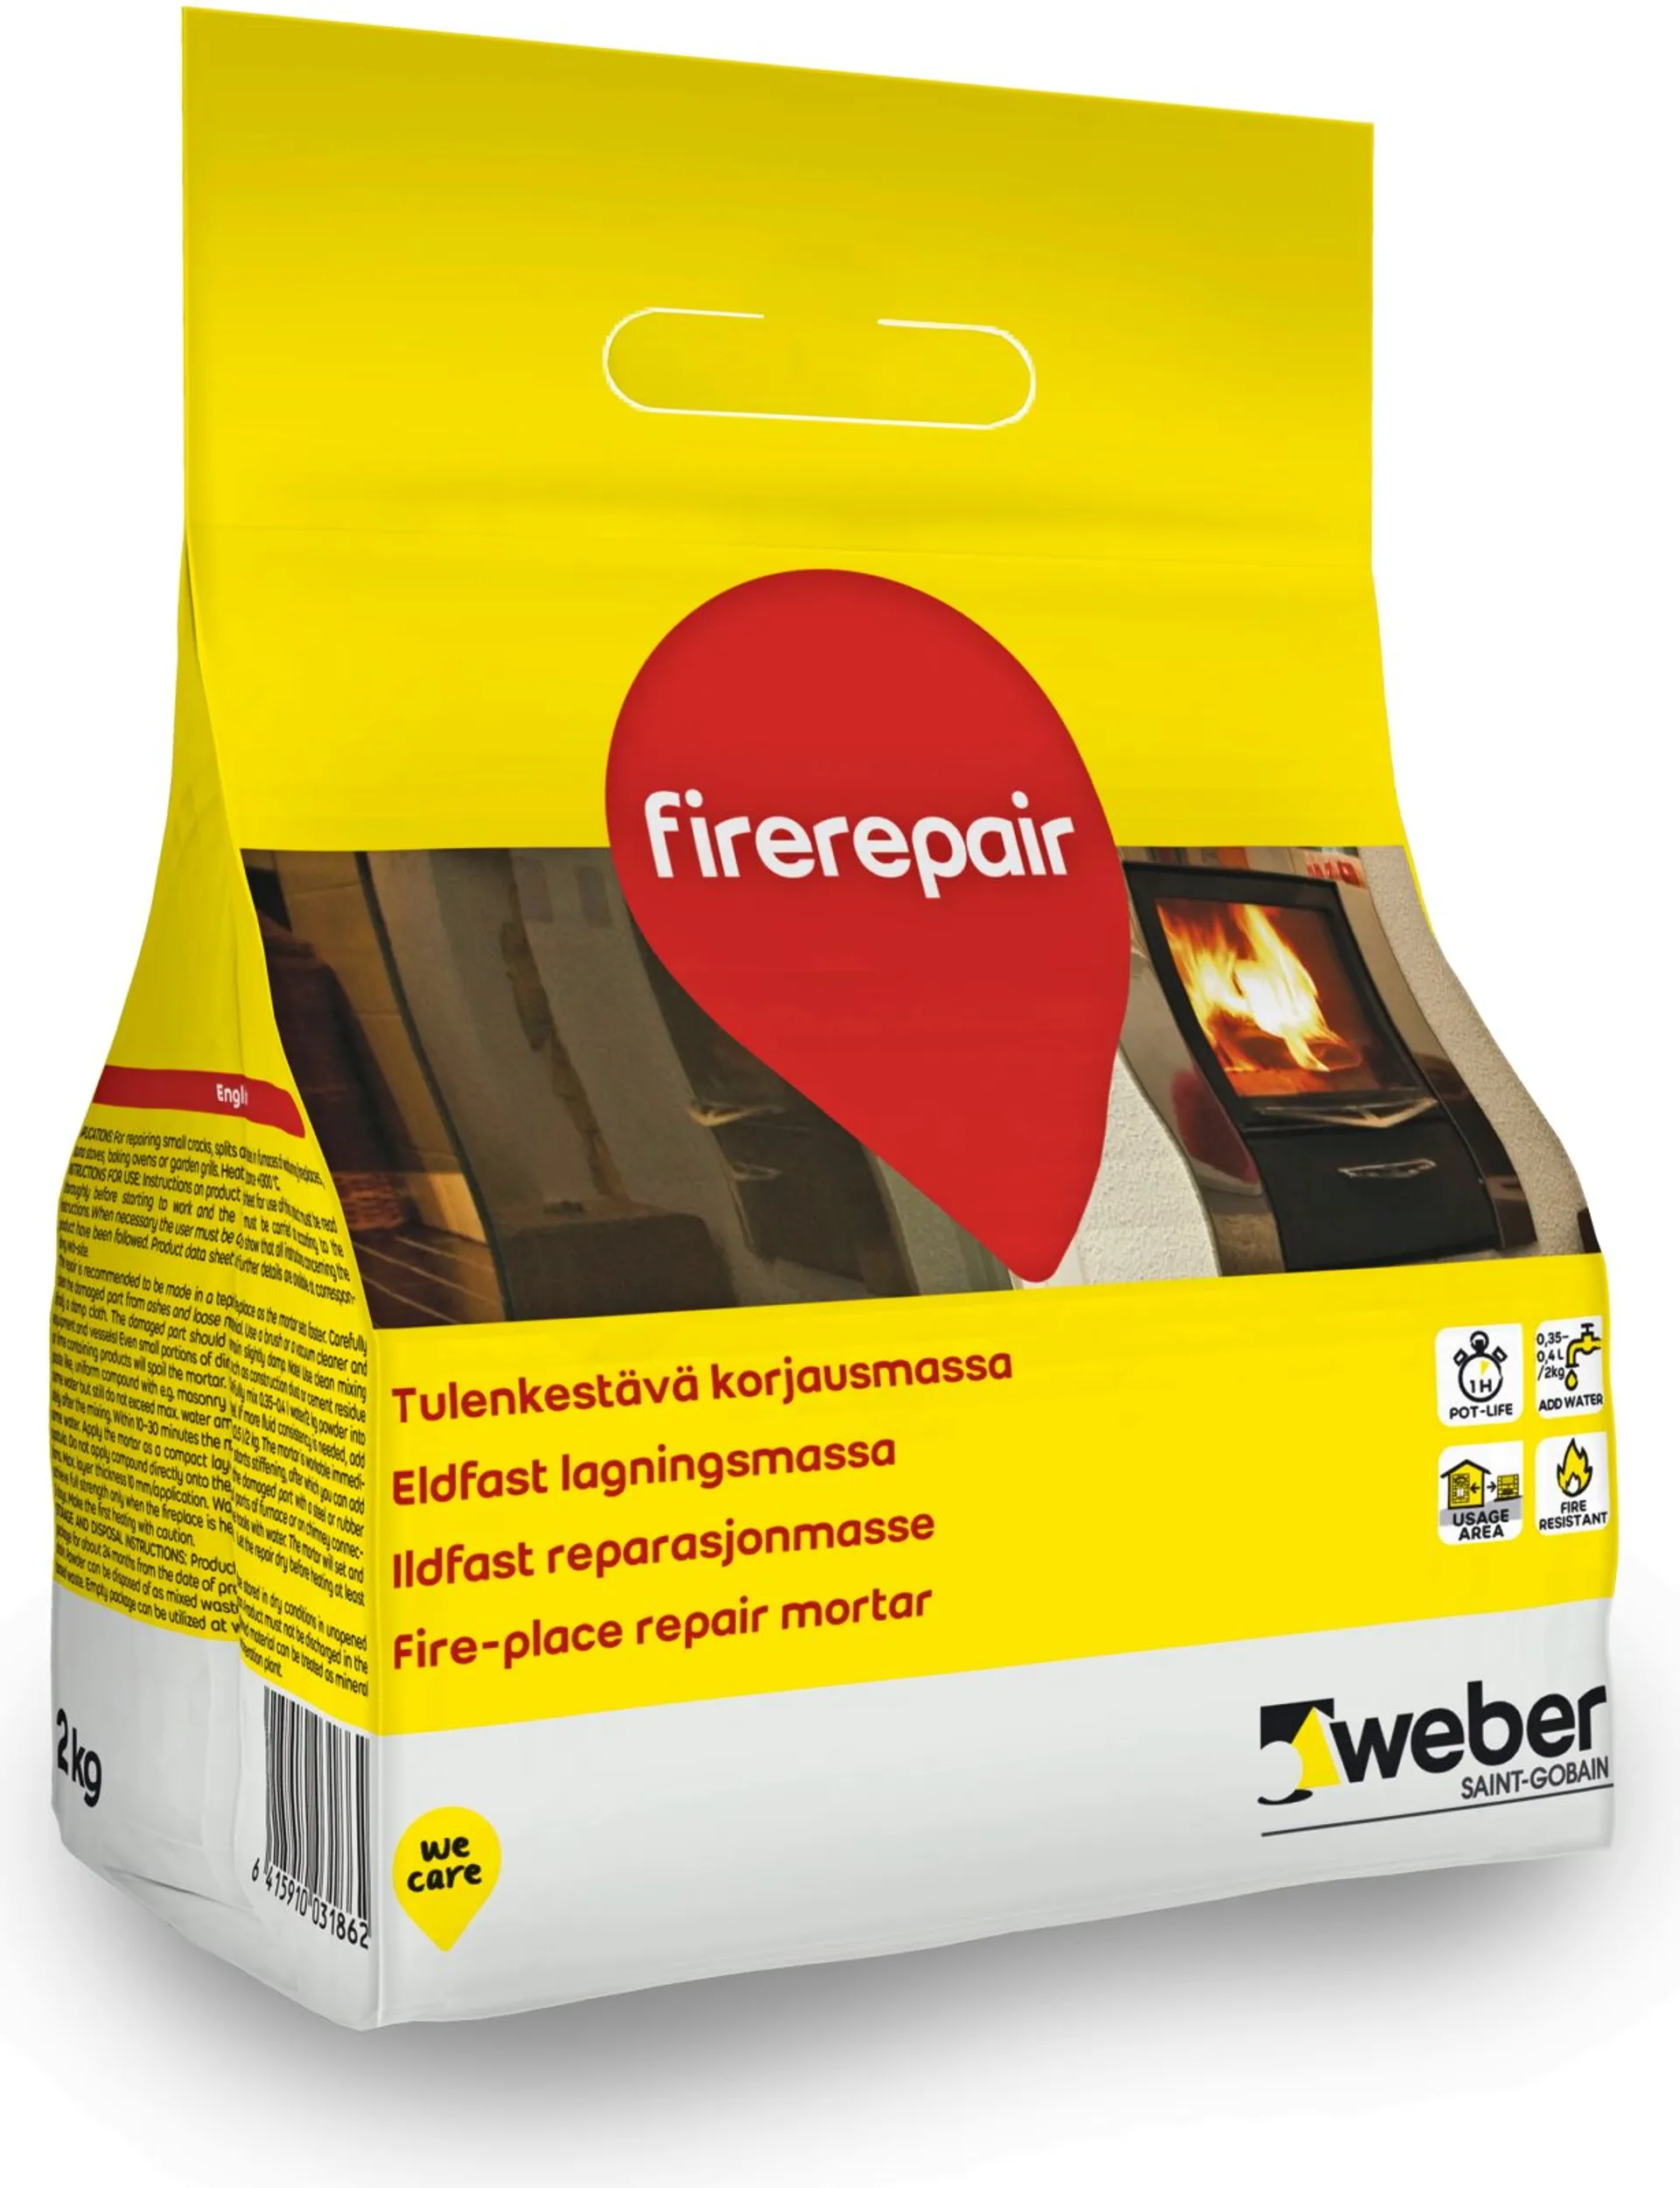 Weber Firerepair 2kg tulenkestävä korjausmassa